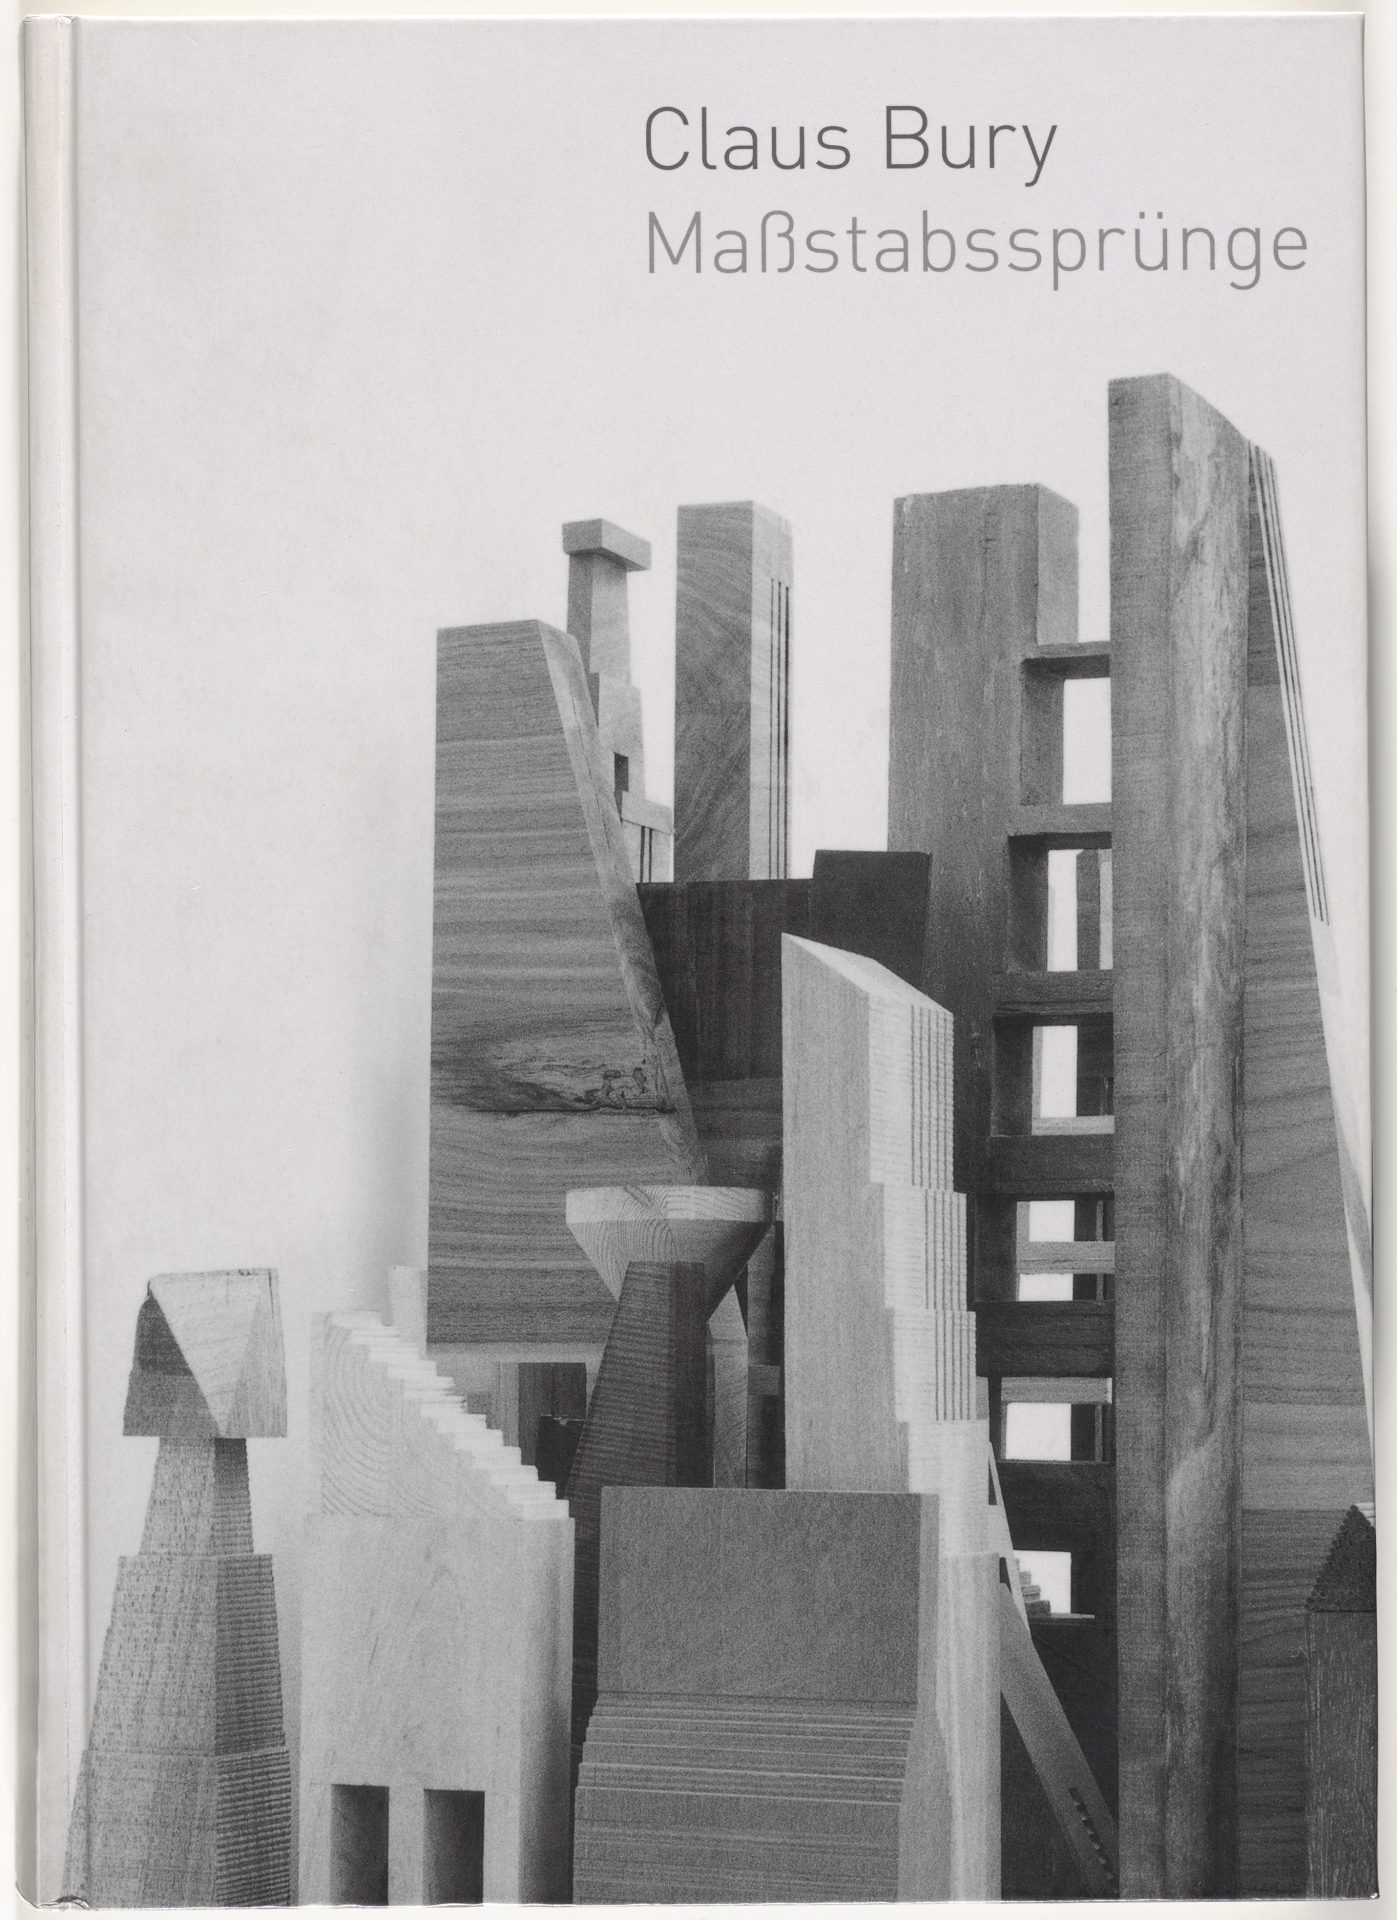 Cover Ausstellungskatalog. Zu sehen ist eine Schwarz-Weiß-Fotografie mit verschiedenen Bauelementen aus Holz. Die Anordnung erinnert an eine Stadtansicht. Darüber steht der Titel rechts oben.